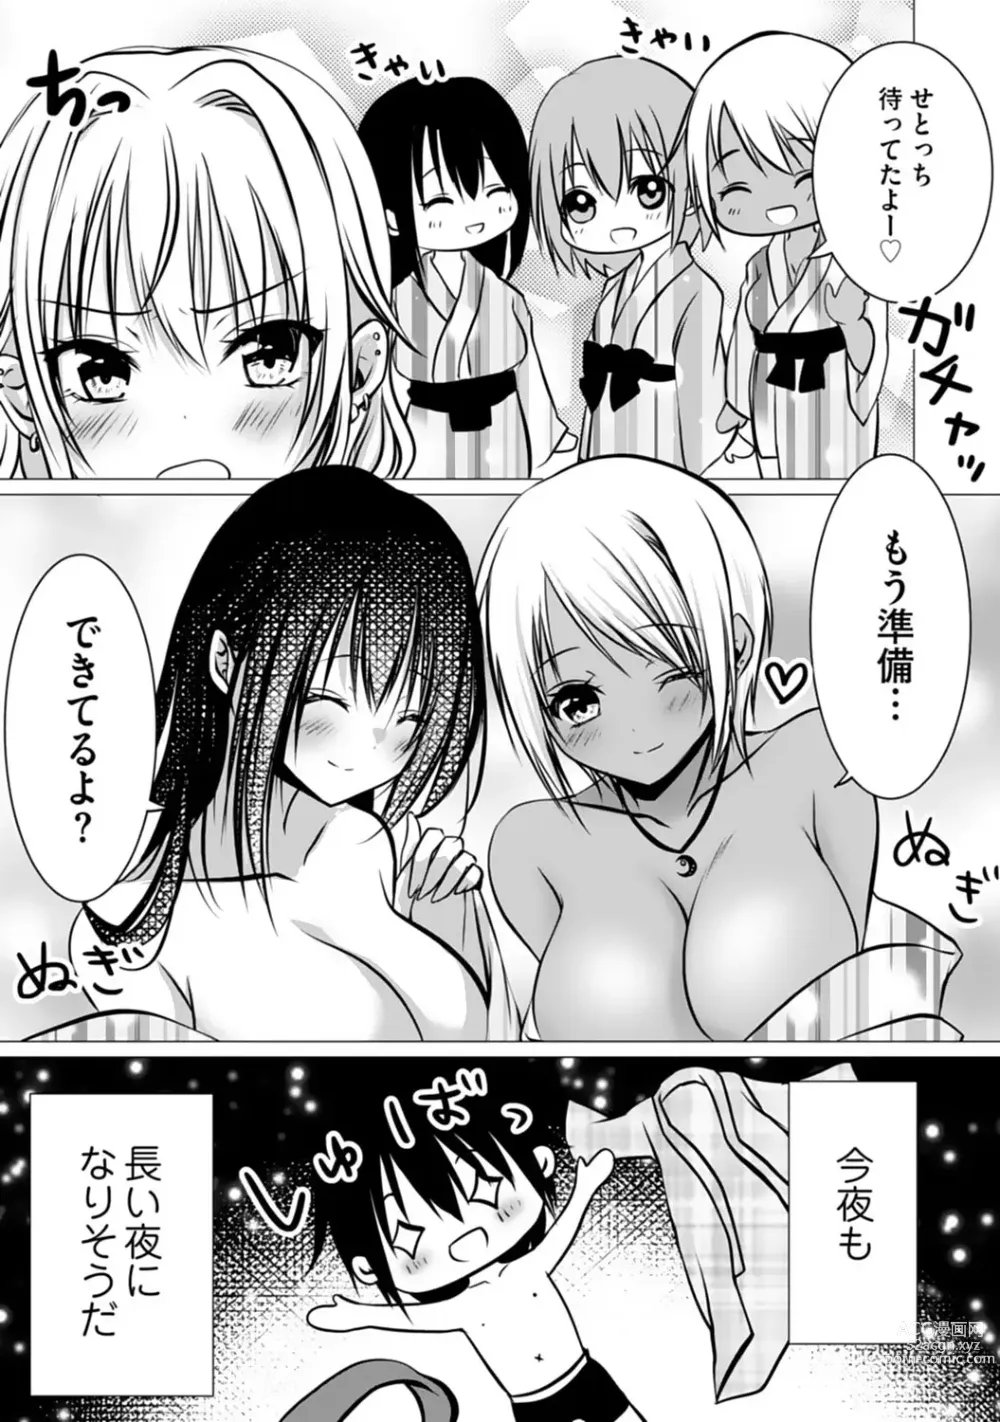 Page 115 of manga Bocchi no Boku demo, Kuzu no Yarichin ni Nareru tte Honto desu ka?